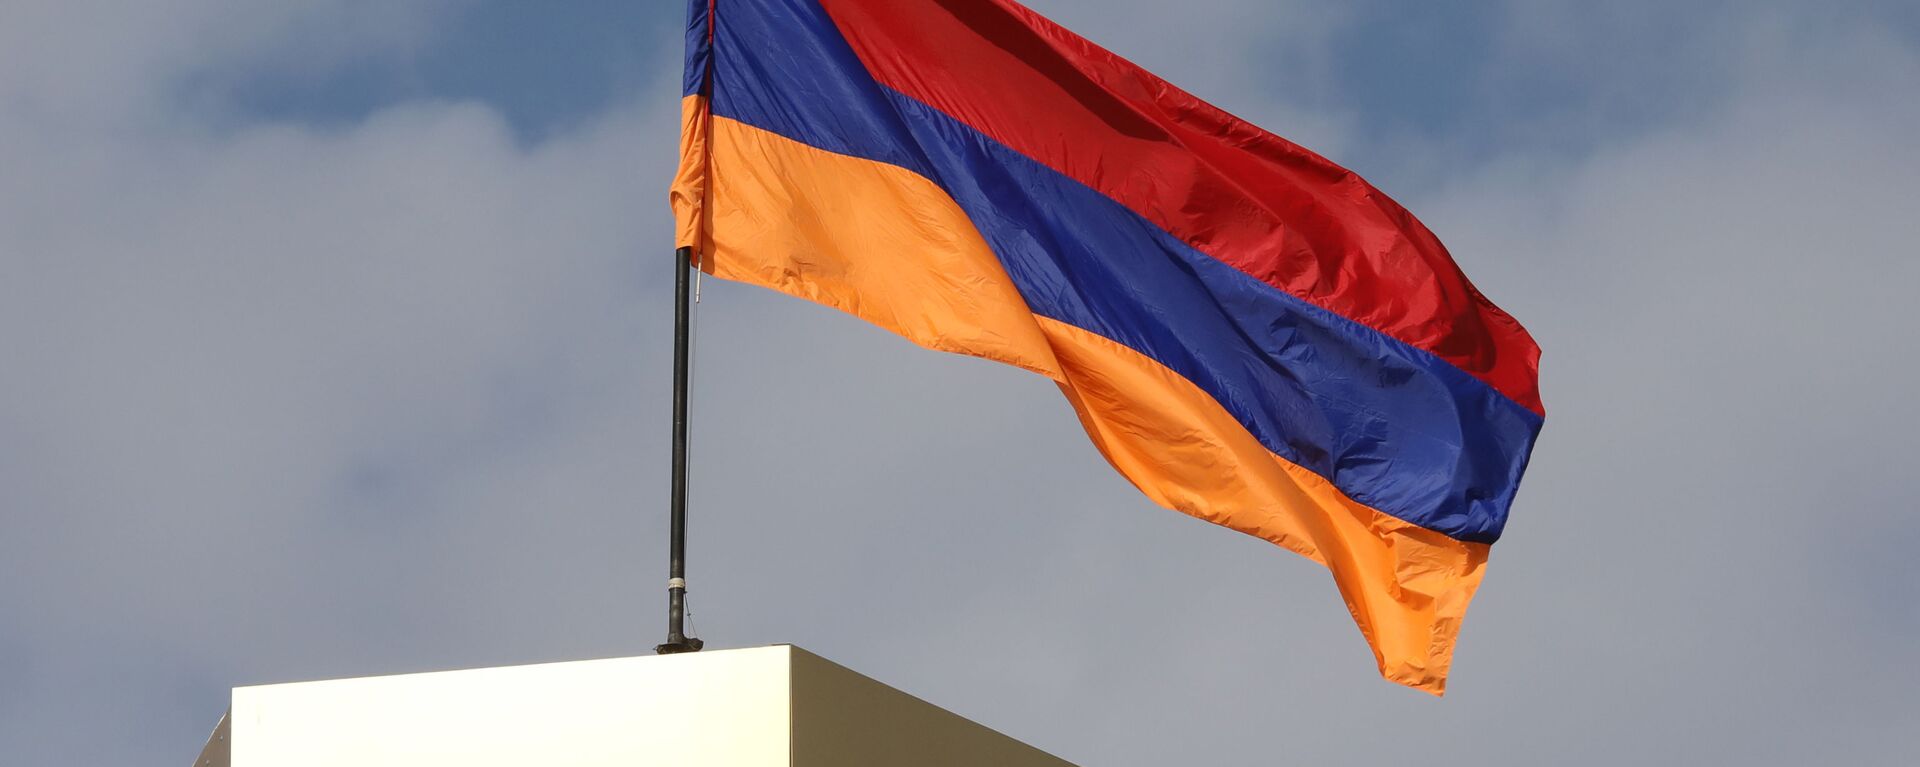 Ermenistan bayrak - Ermenistan bayrağı - Sputnik Türkiye, 1920, 19.12.2021